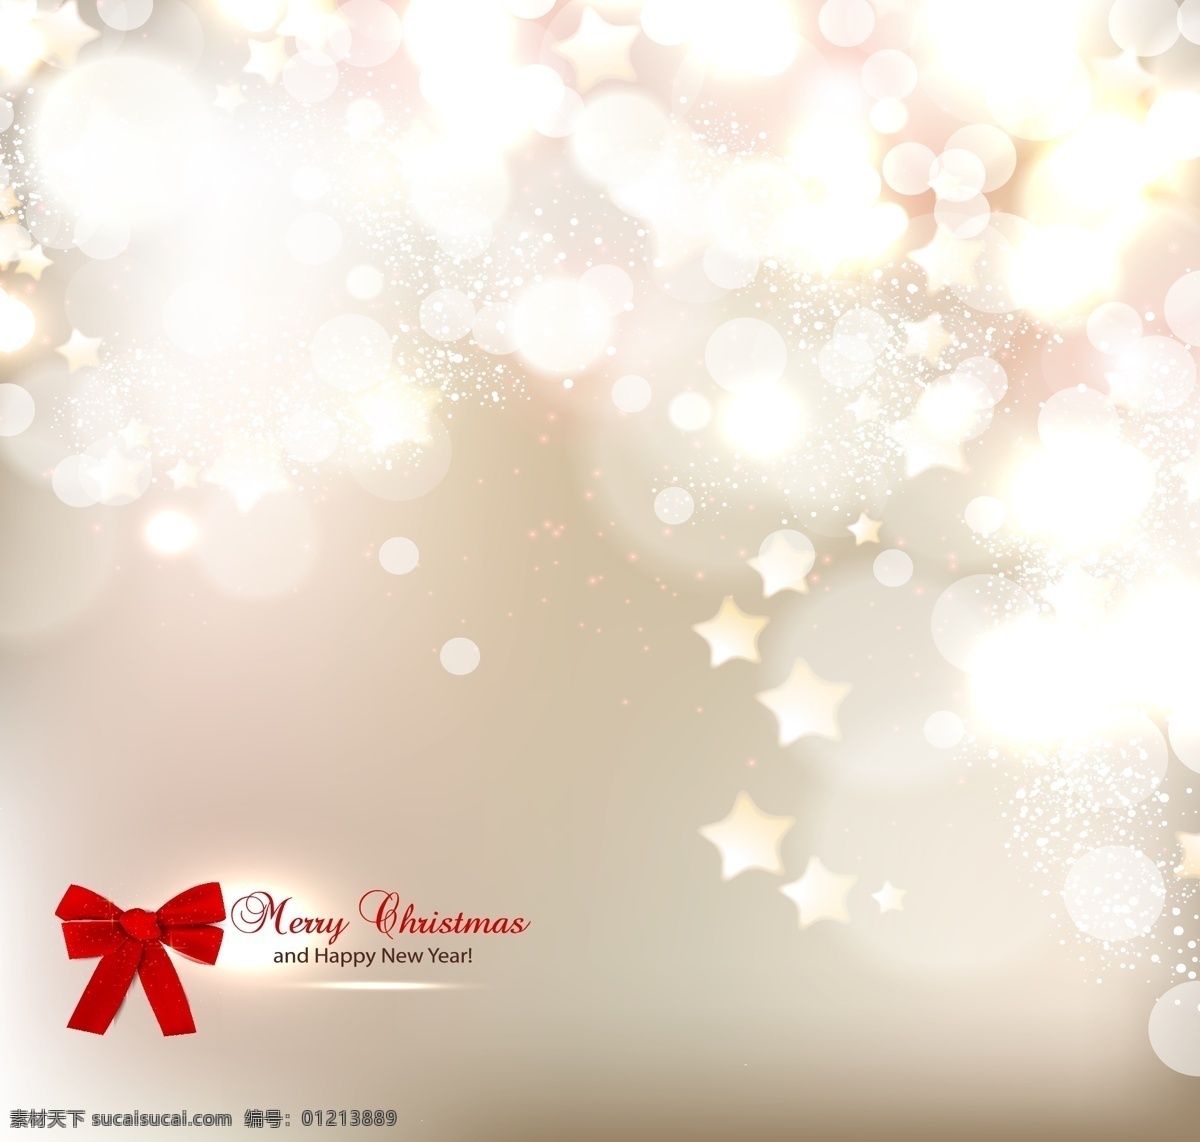 璀璨 背景 圣诞节 卡片 矢量 白色 璀璨背景 光晕 蝴蝶结 圣诞节卡片 星光 海报